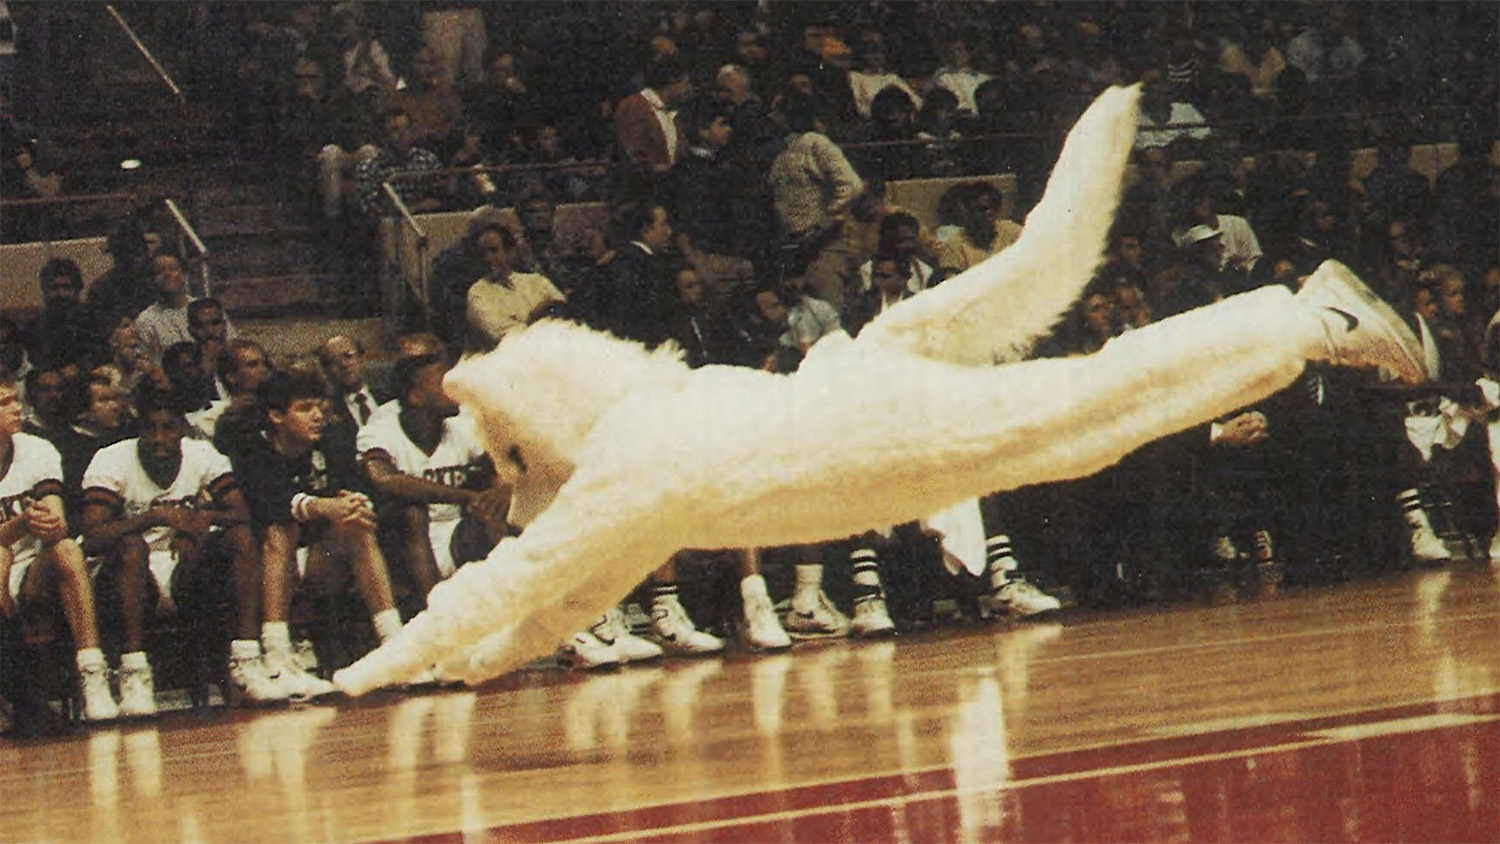 Jonathan the husky mascot performs on the basketball floor